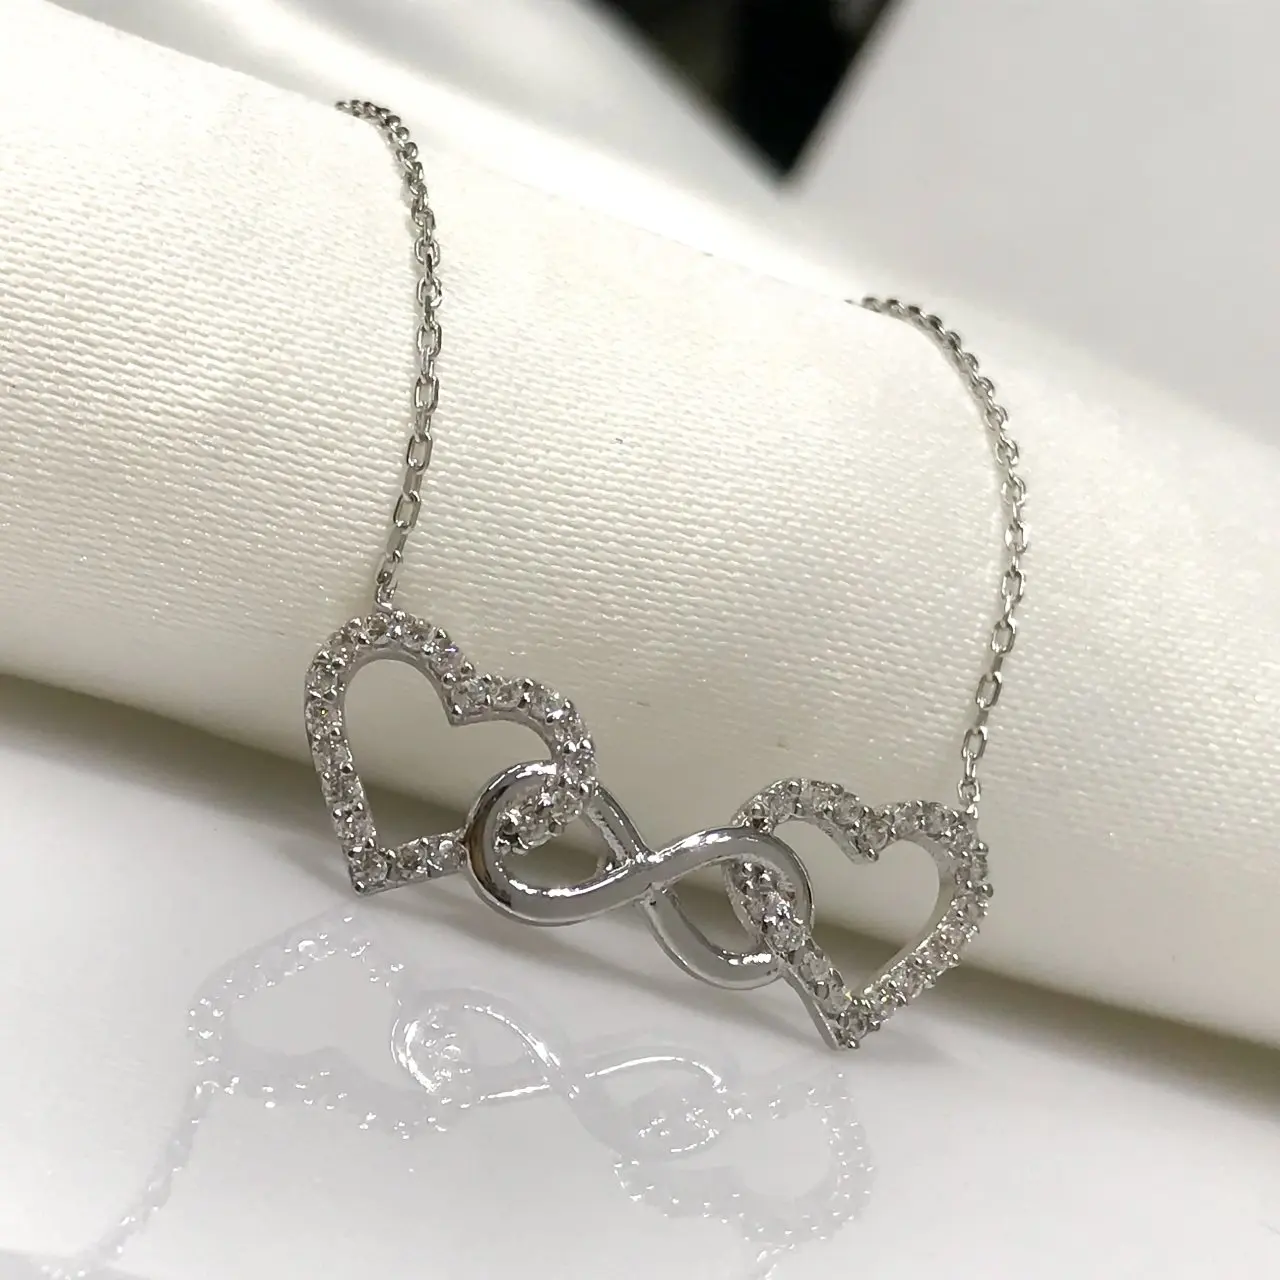 Новое серебряное ожерелье в виде сердца бесконечности от AliExpress RU&CIS NEW